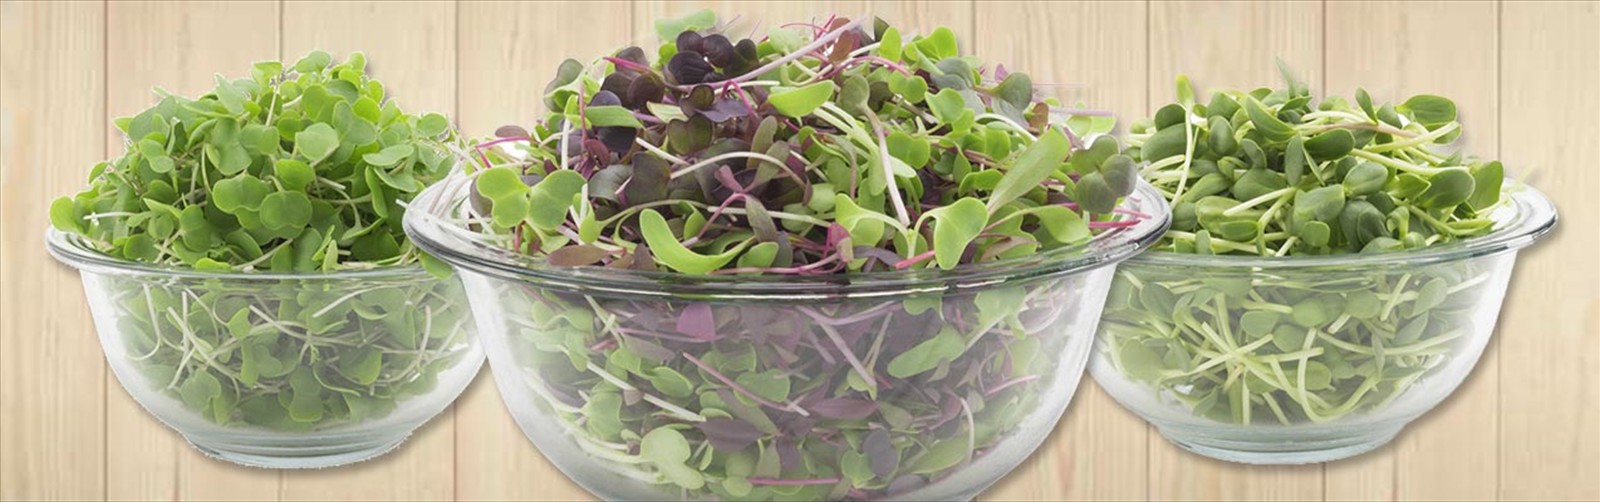 Microgreen salad mix | Microgreens super salads organic greens